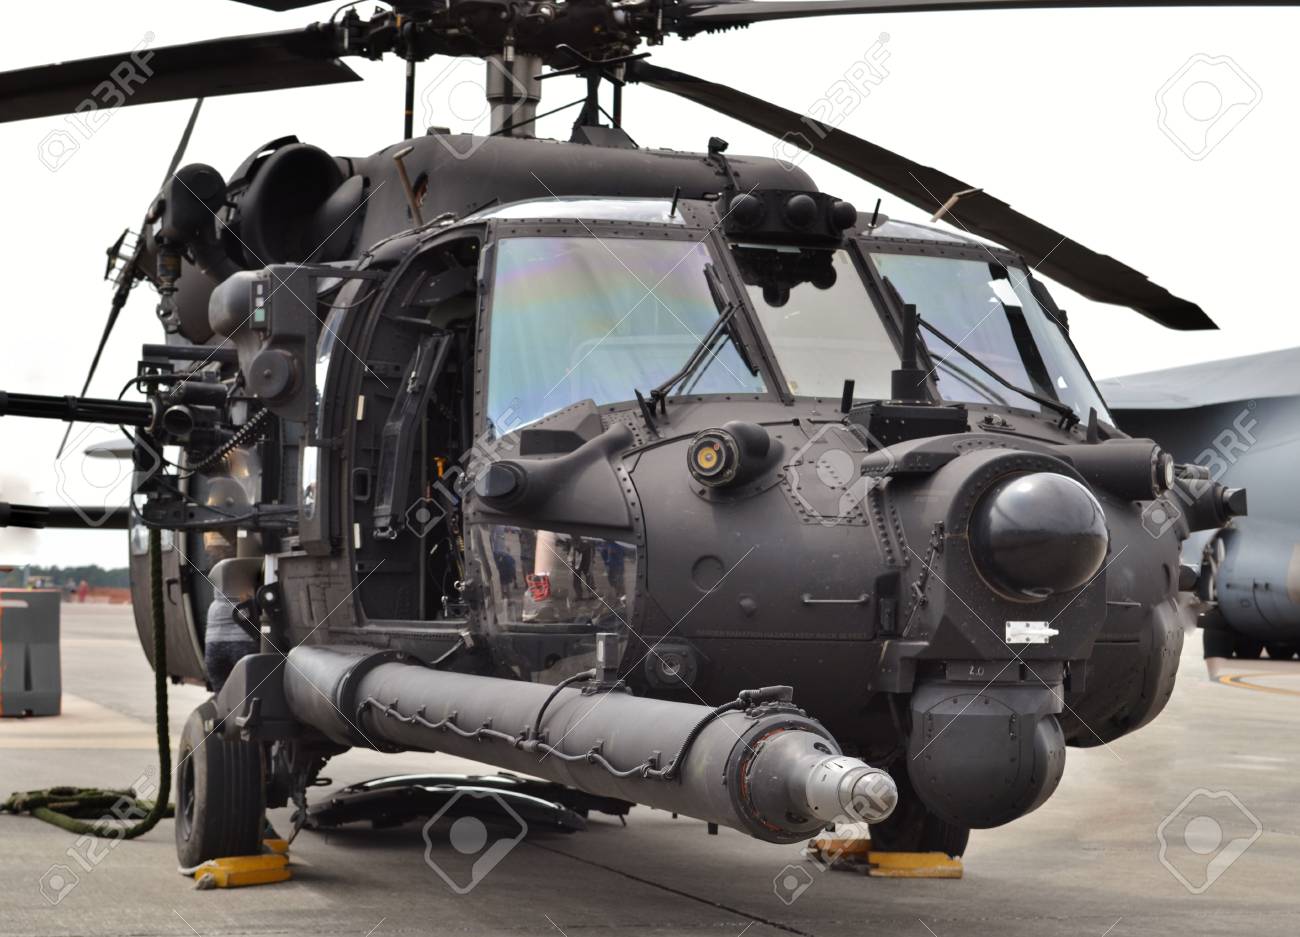 90482787-special-forces-mh-60-blackhawk-helicopter-91000c8eea0f33b2077c104ffa97ec06.jpg